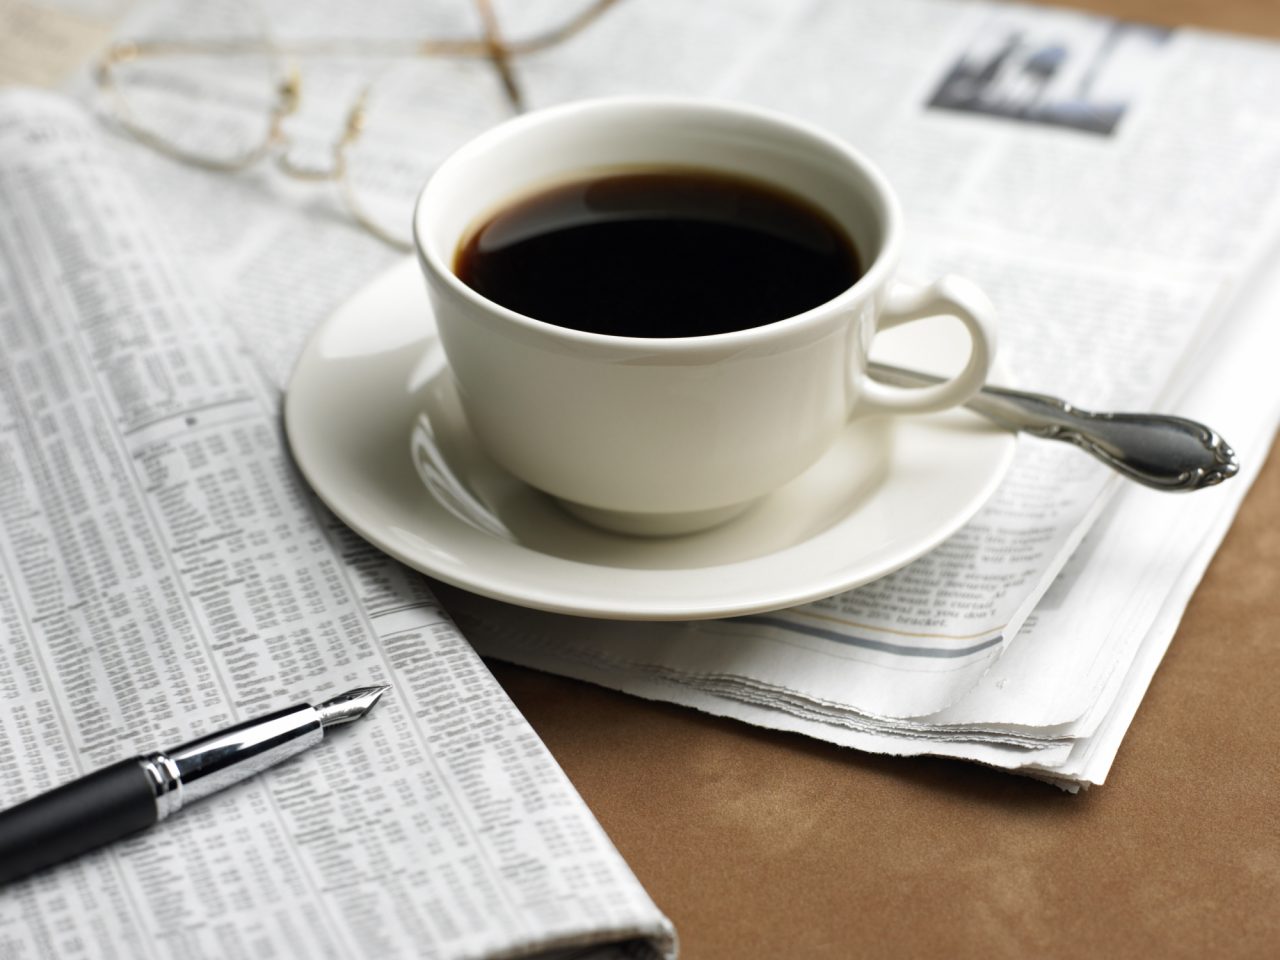 Il caffè contro il diabete salute ricerche caffeina parkinson cancro alzheimer studio cerebrale genetica sonno